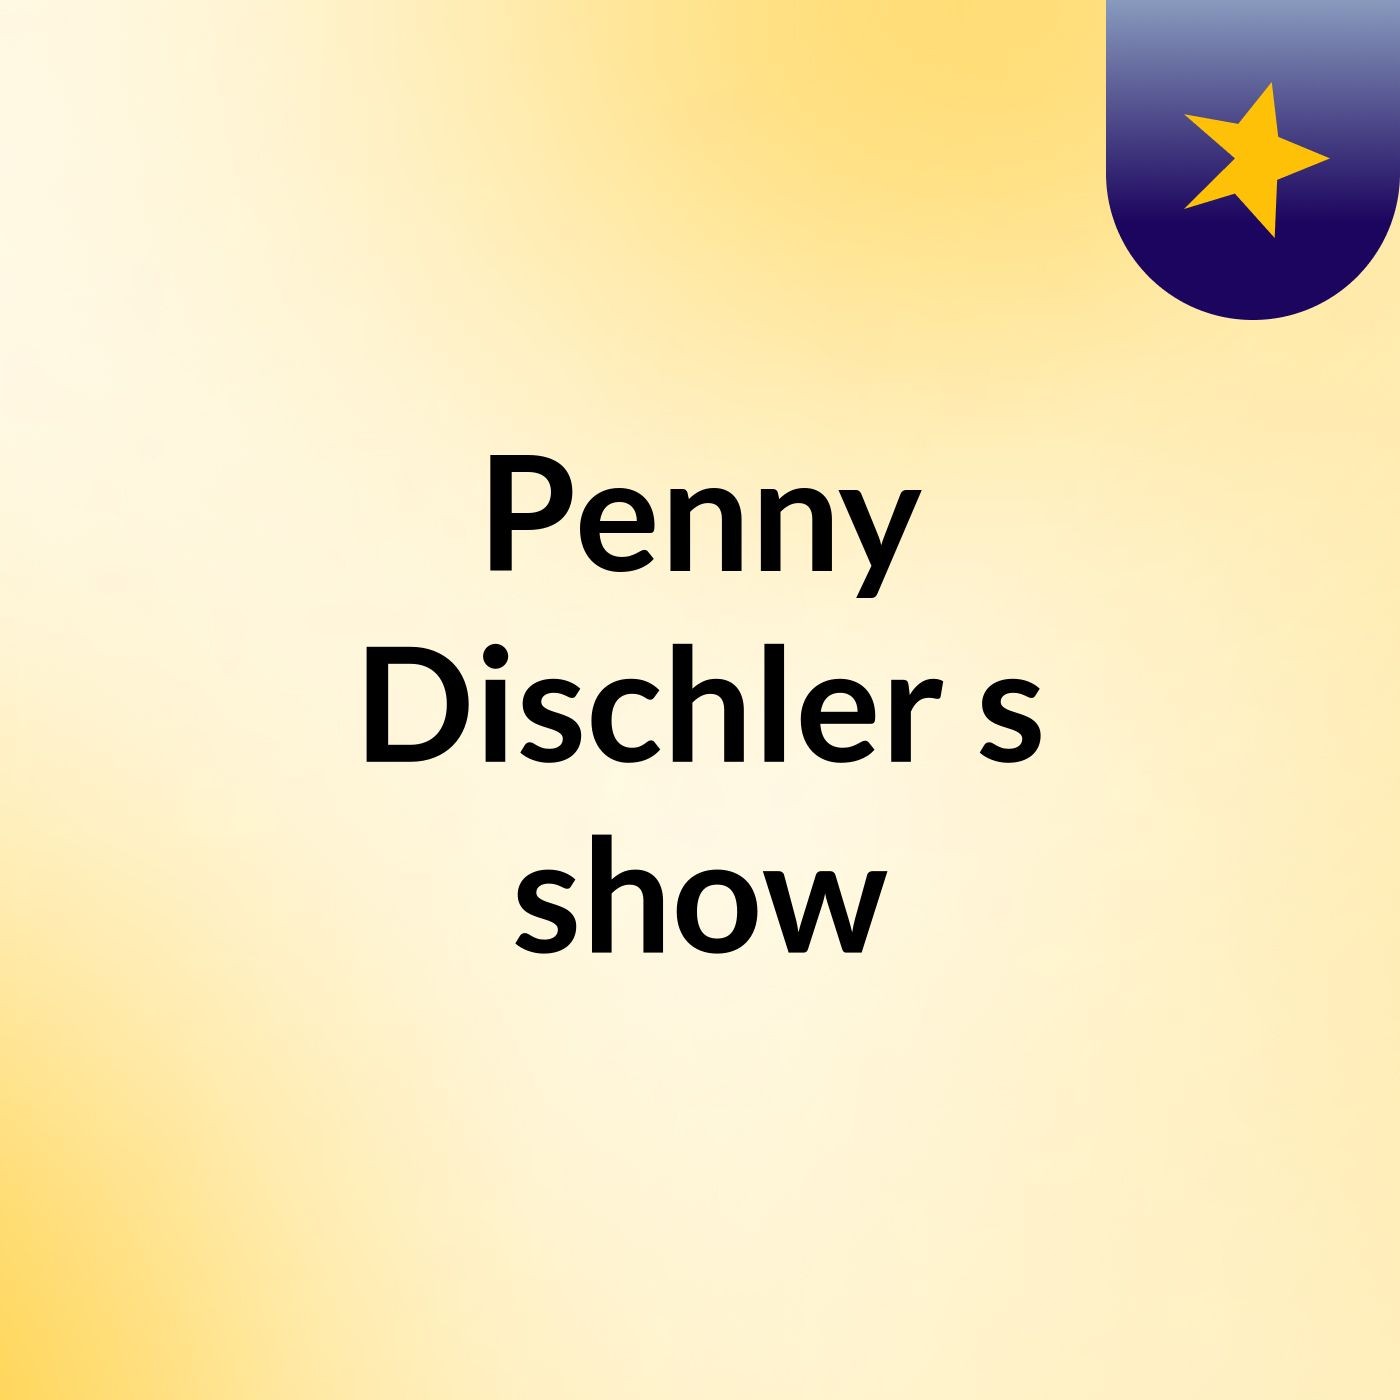 Penny Dischler's show